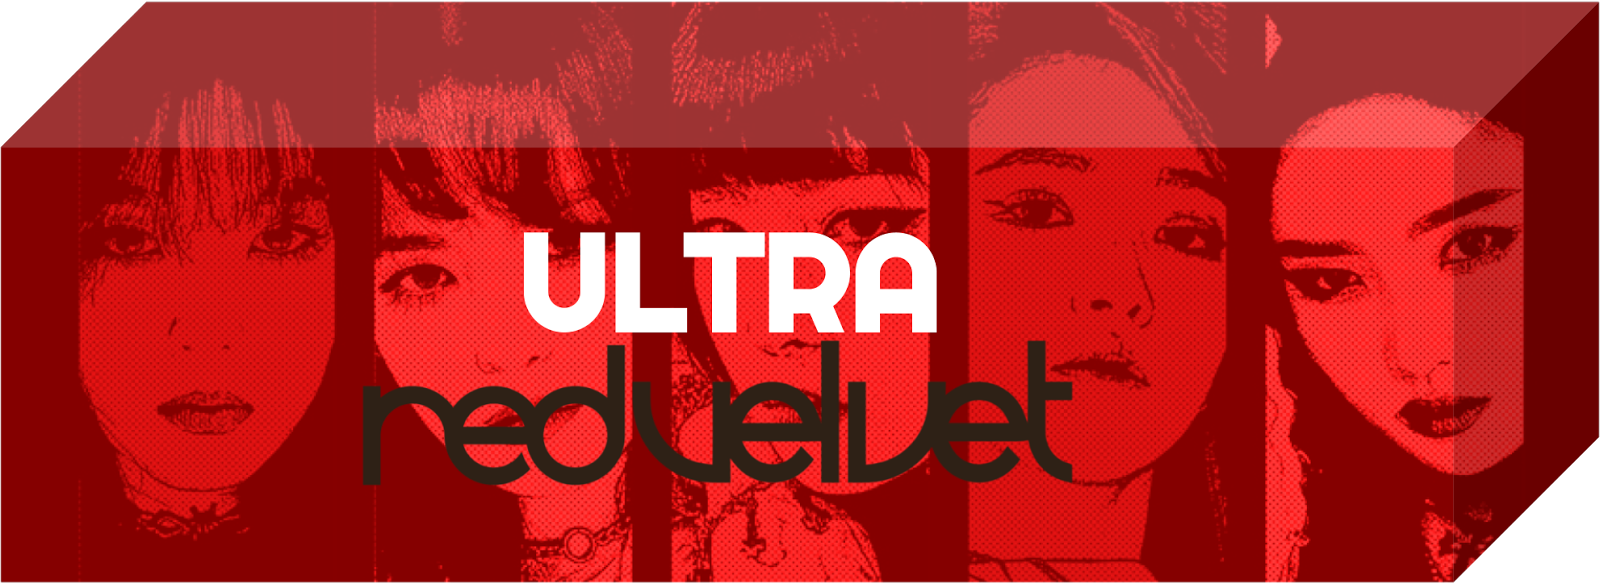 Ultra Red Velvet